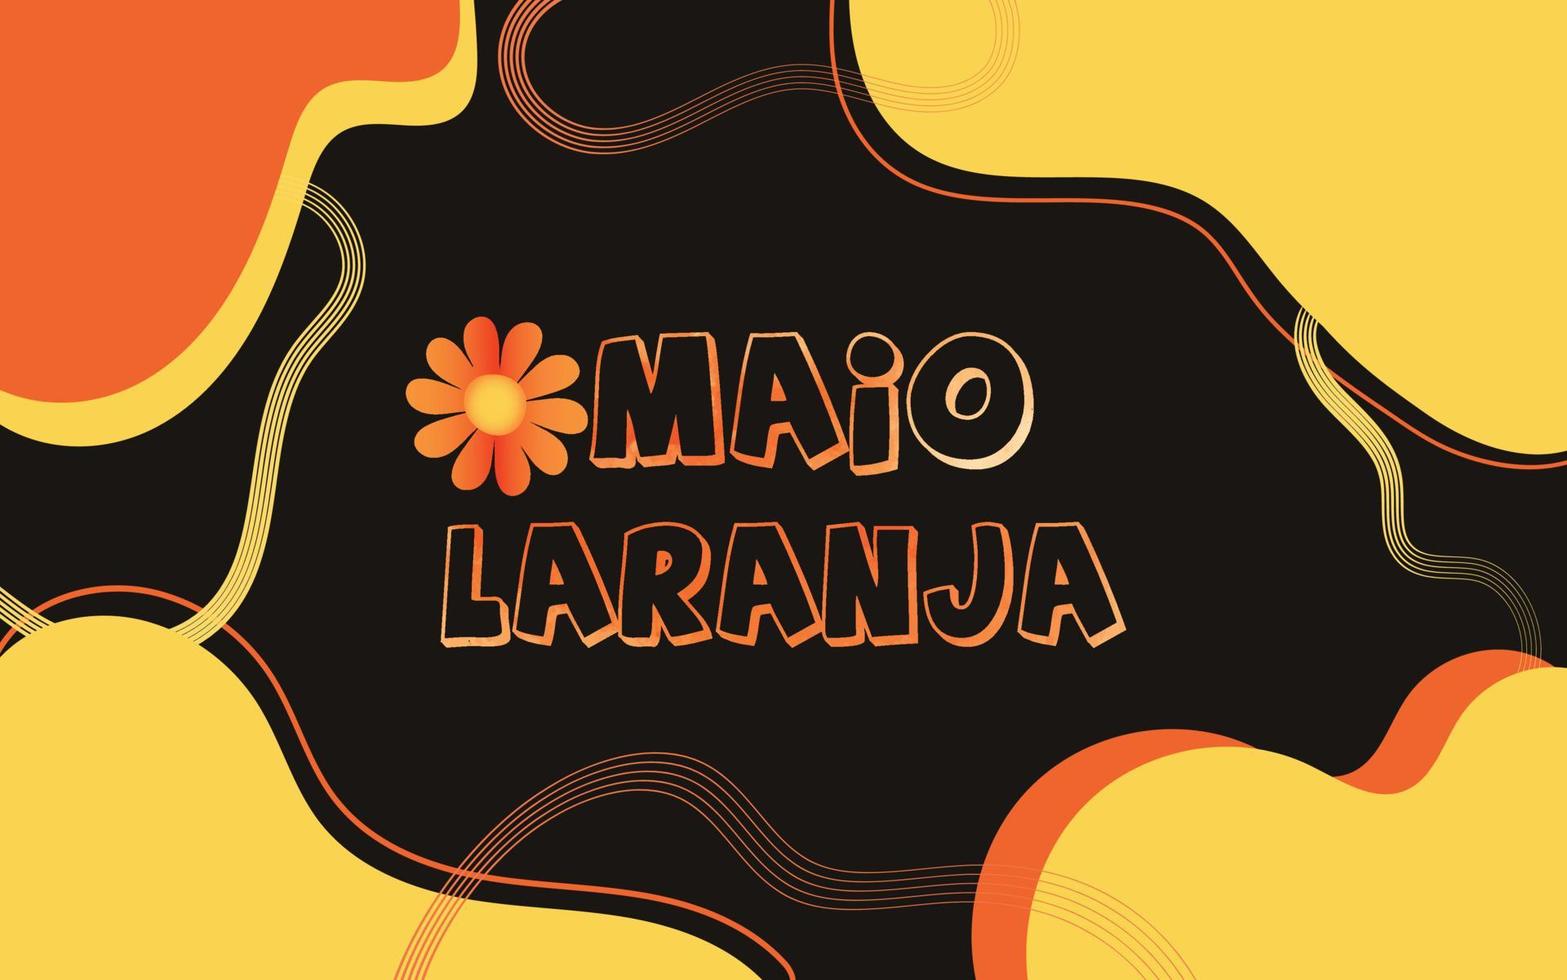 abstrakter hintergrund von brasilien feiert am 18. mai den nationalfeiertag maio laranja gegen missbrauch und ausbeutung vektor